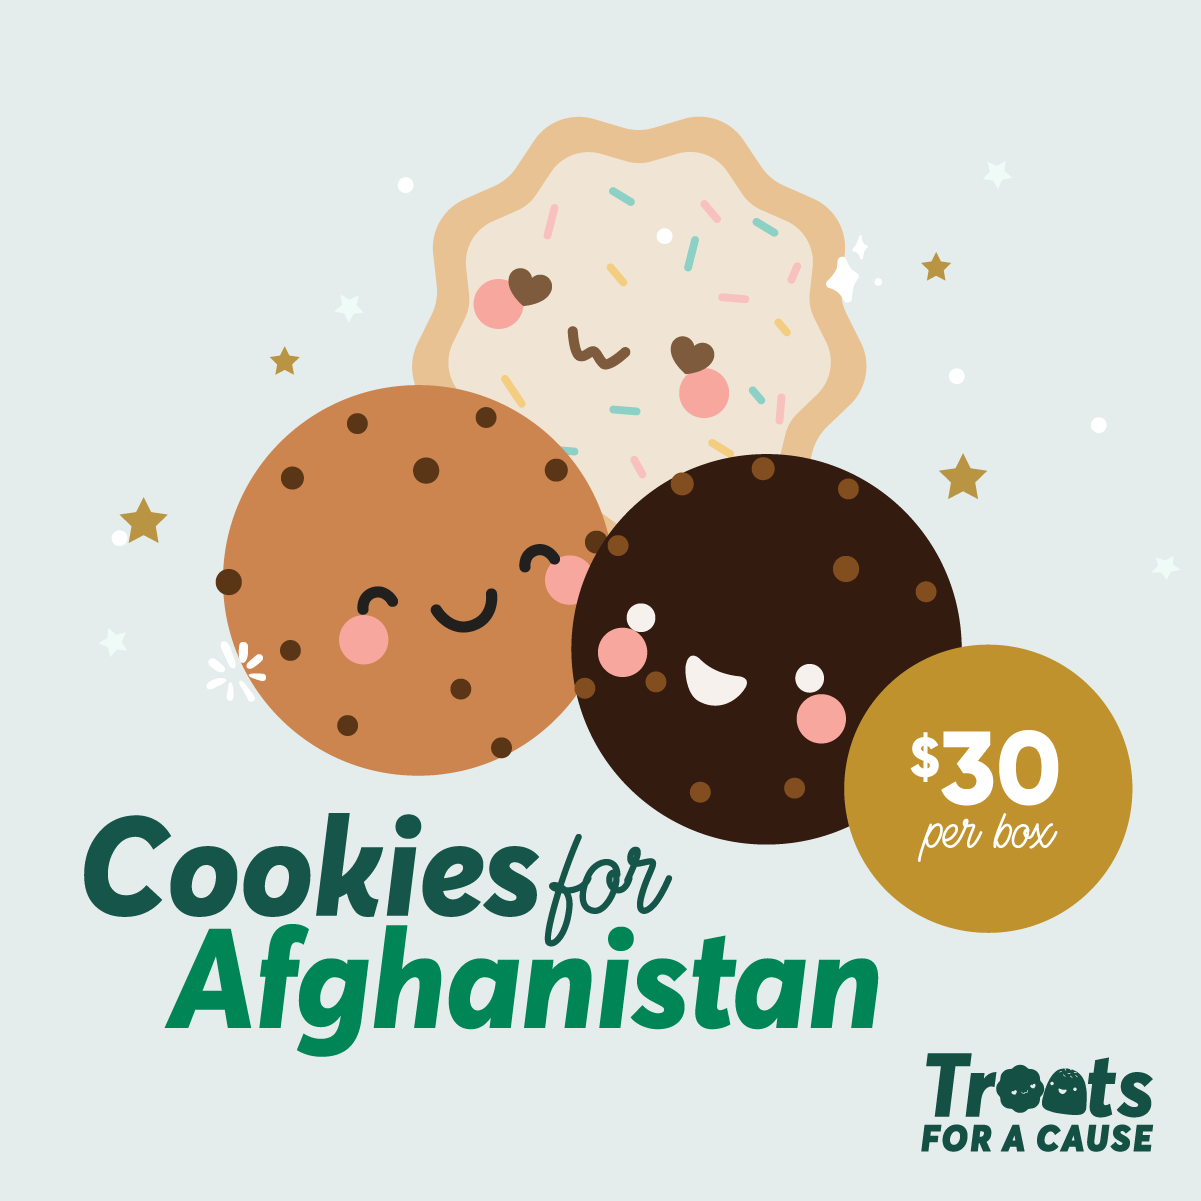 Cliquer ici pour obtenir plus d'informations sur Cookies for Afghanistan